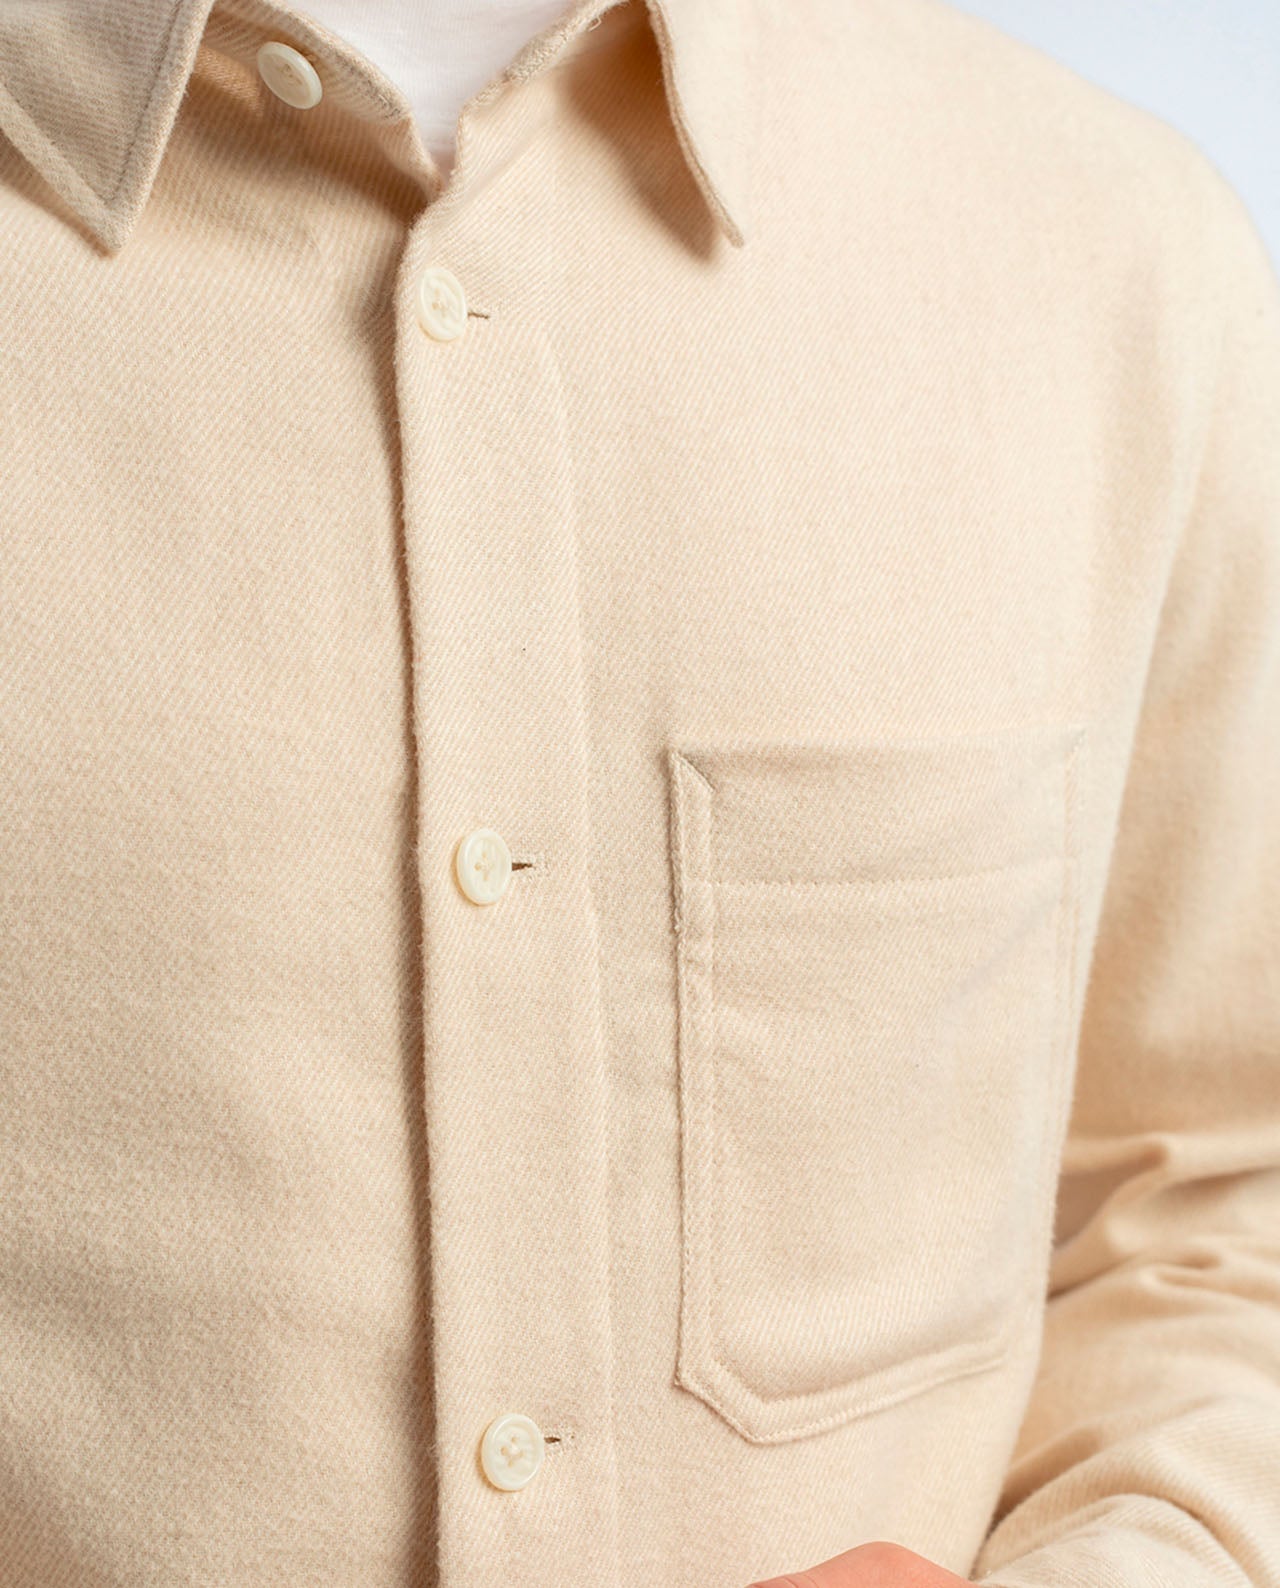 marché commun rotholz chemise flanelle homme coton biologique éco-responsable blanc crème